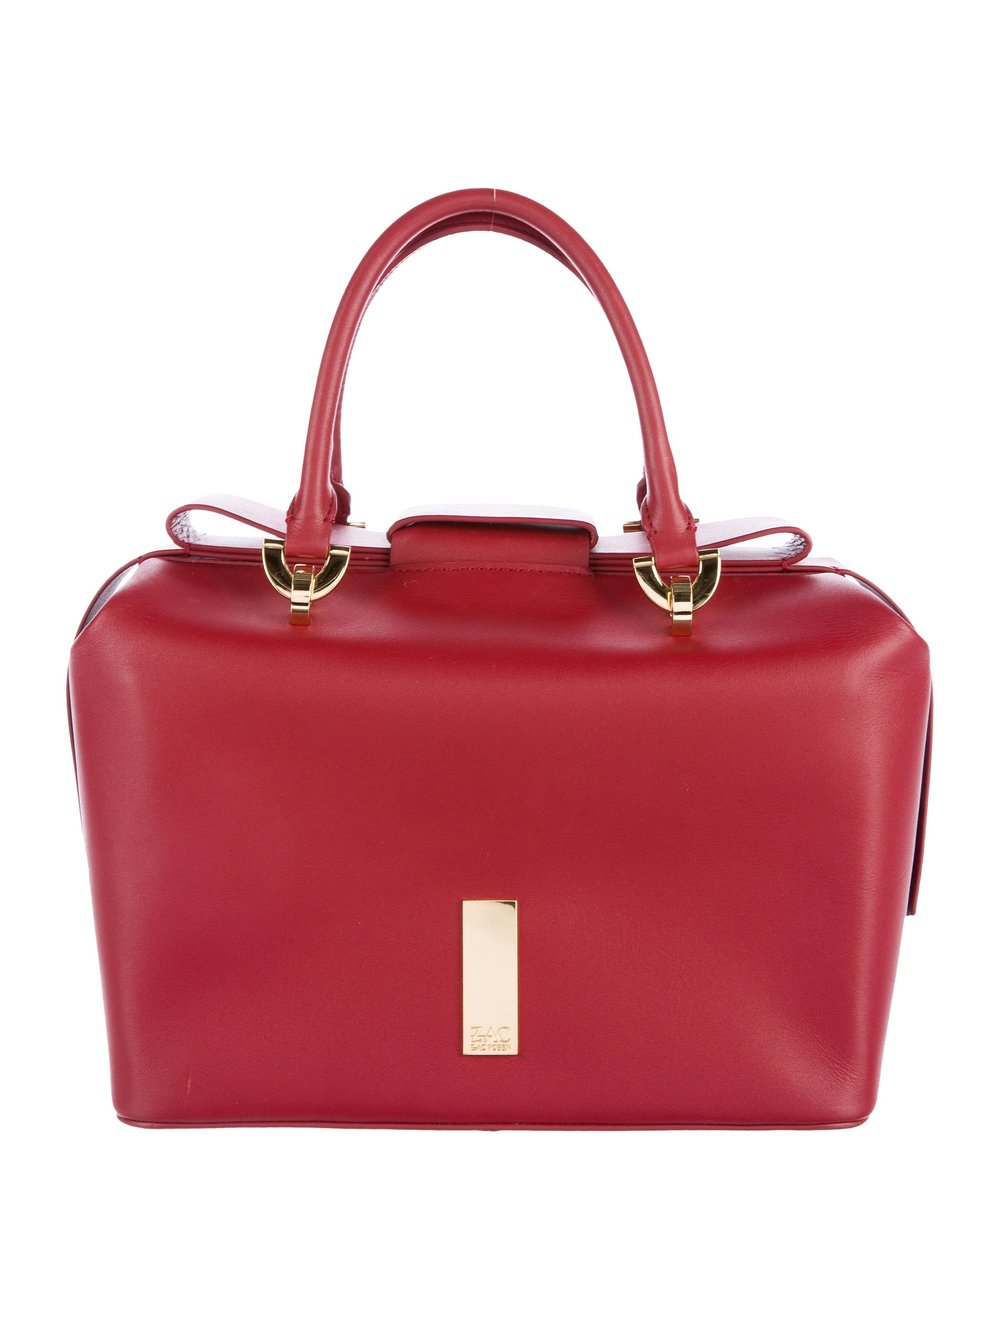 ZAC by Zac Posen | Red Leather Bow Handbag